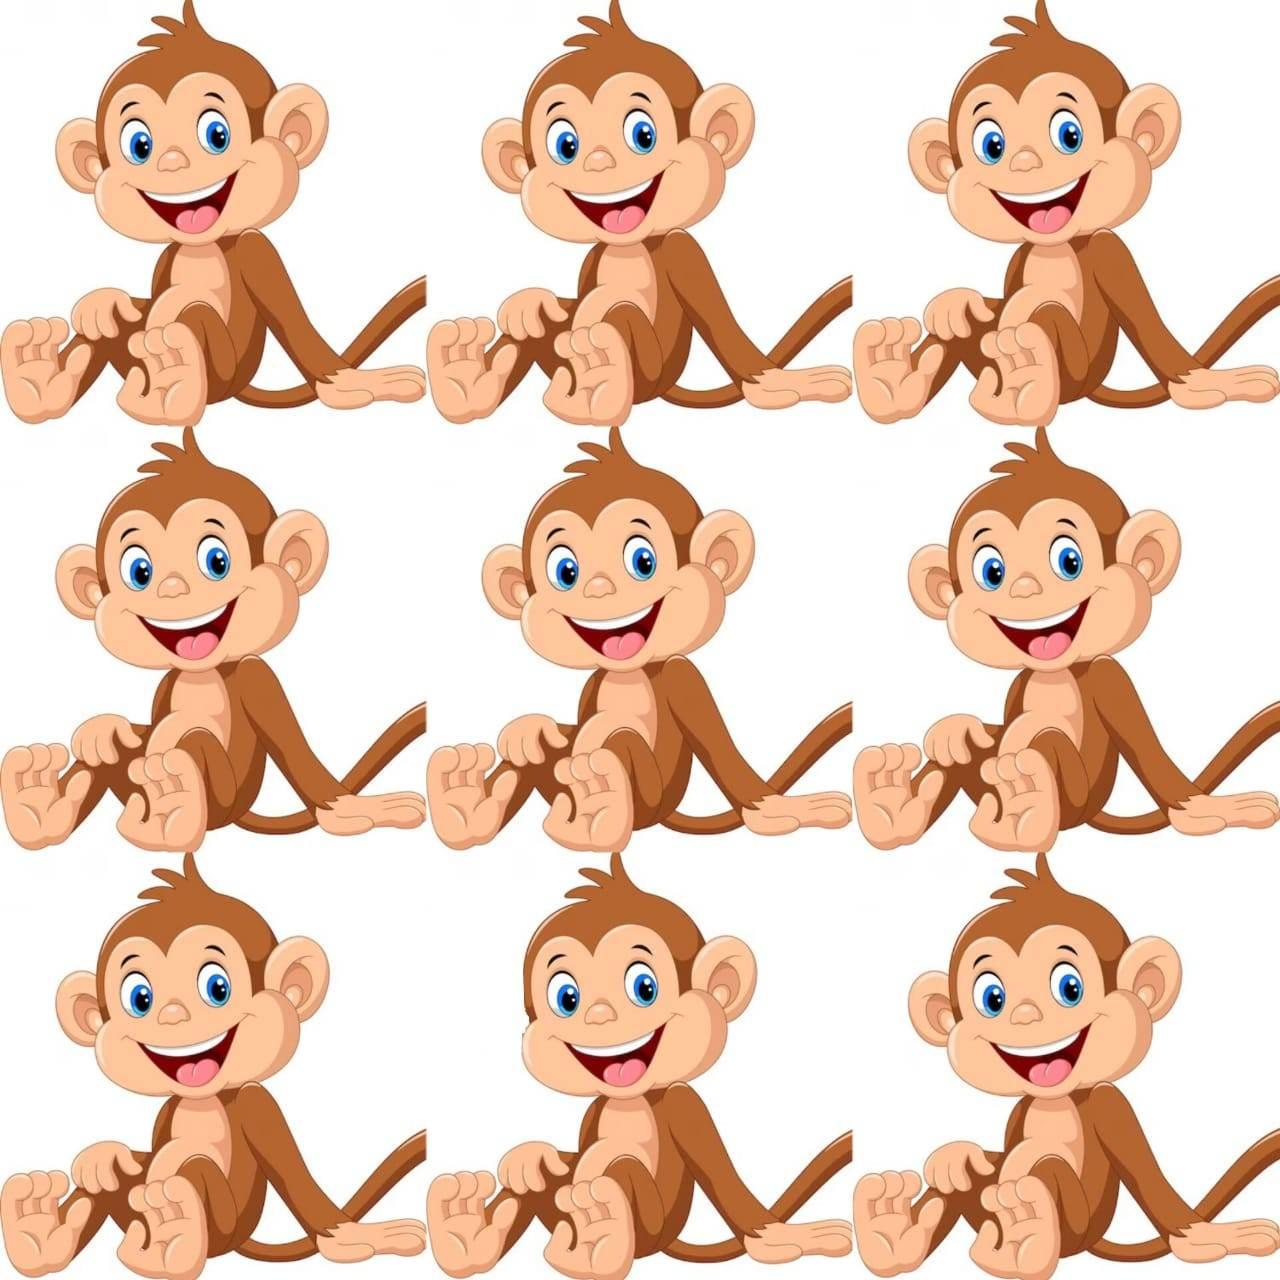 اختبار قوة ملاحظة.. أوجد القرد المختلف في الصورة خلال 20 ثانية فقط